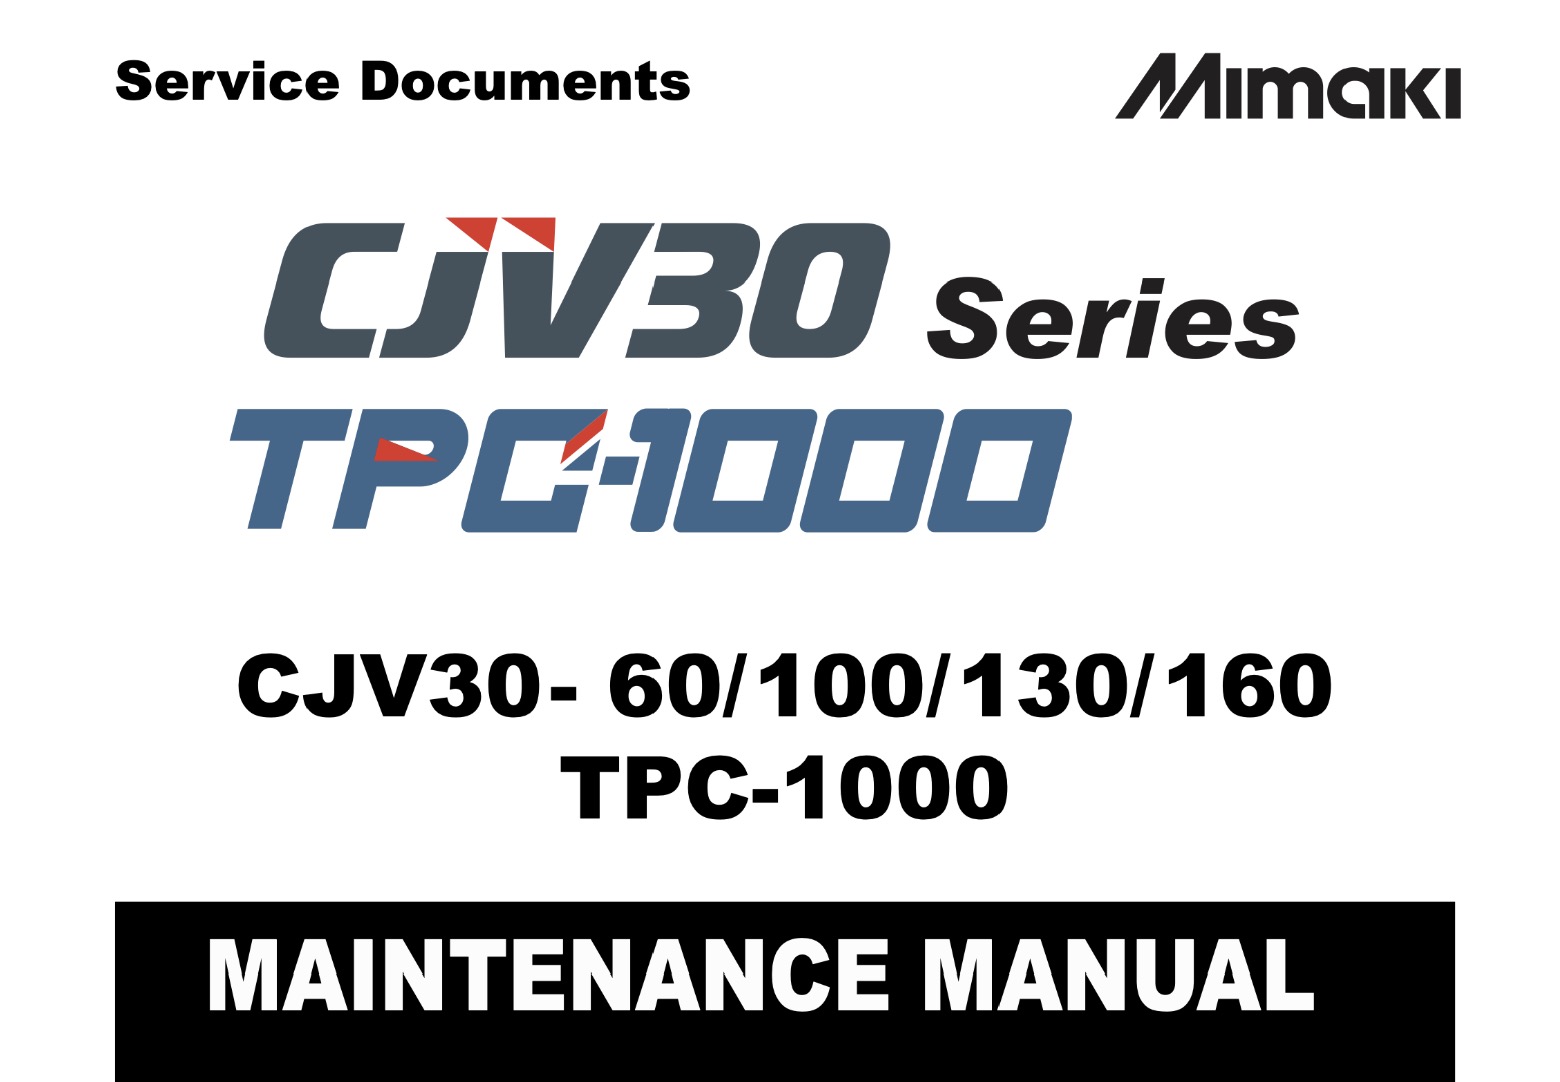 Mimaki CJV30-60, CJV30-100, CJV30-130, CJV30-160, TPC-1000 Maintenance Manual